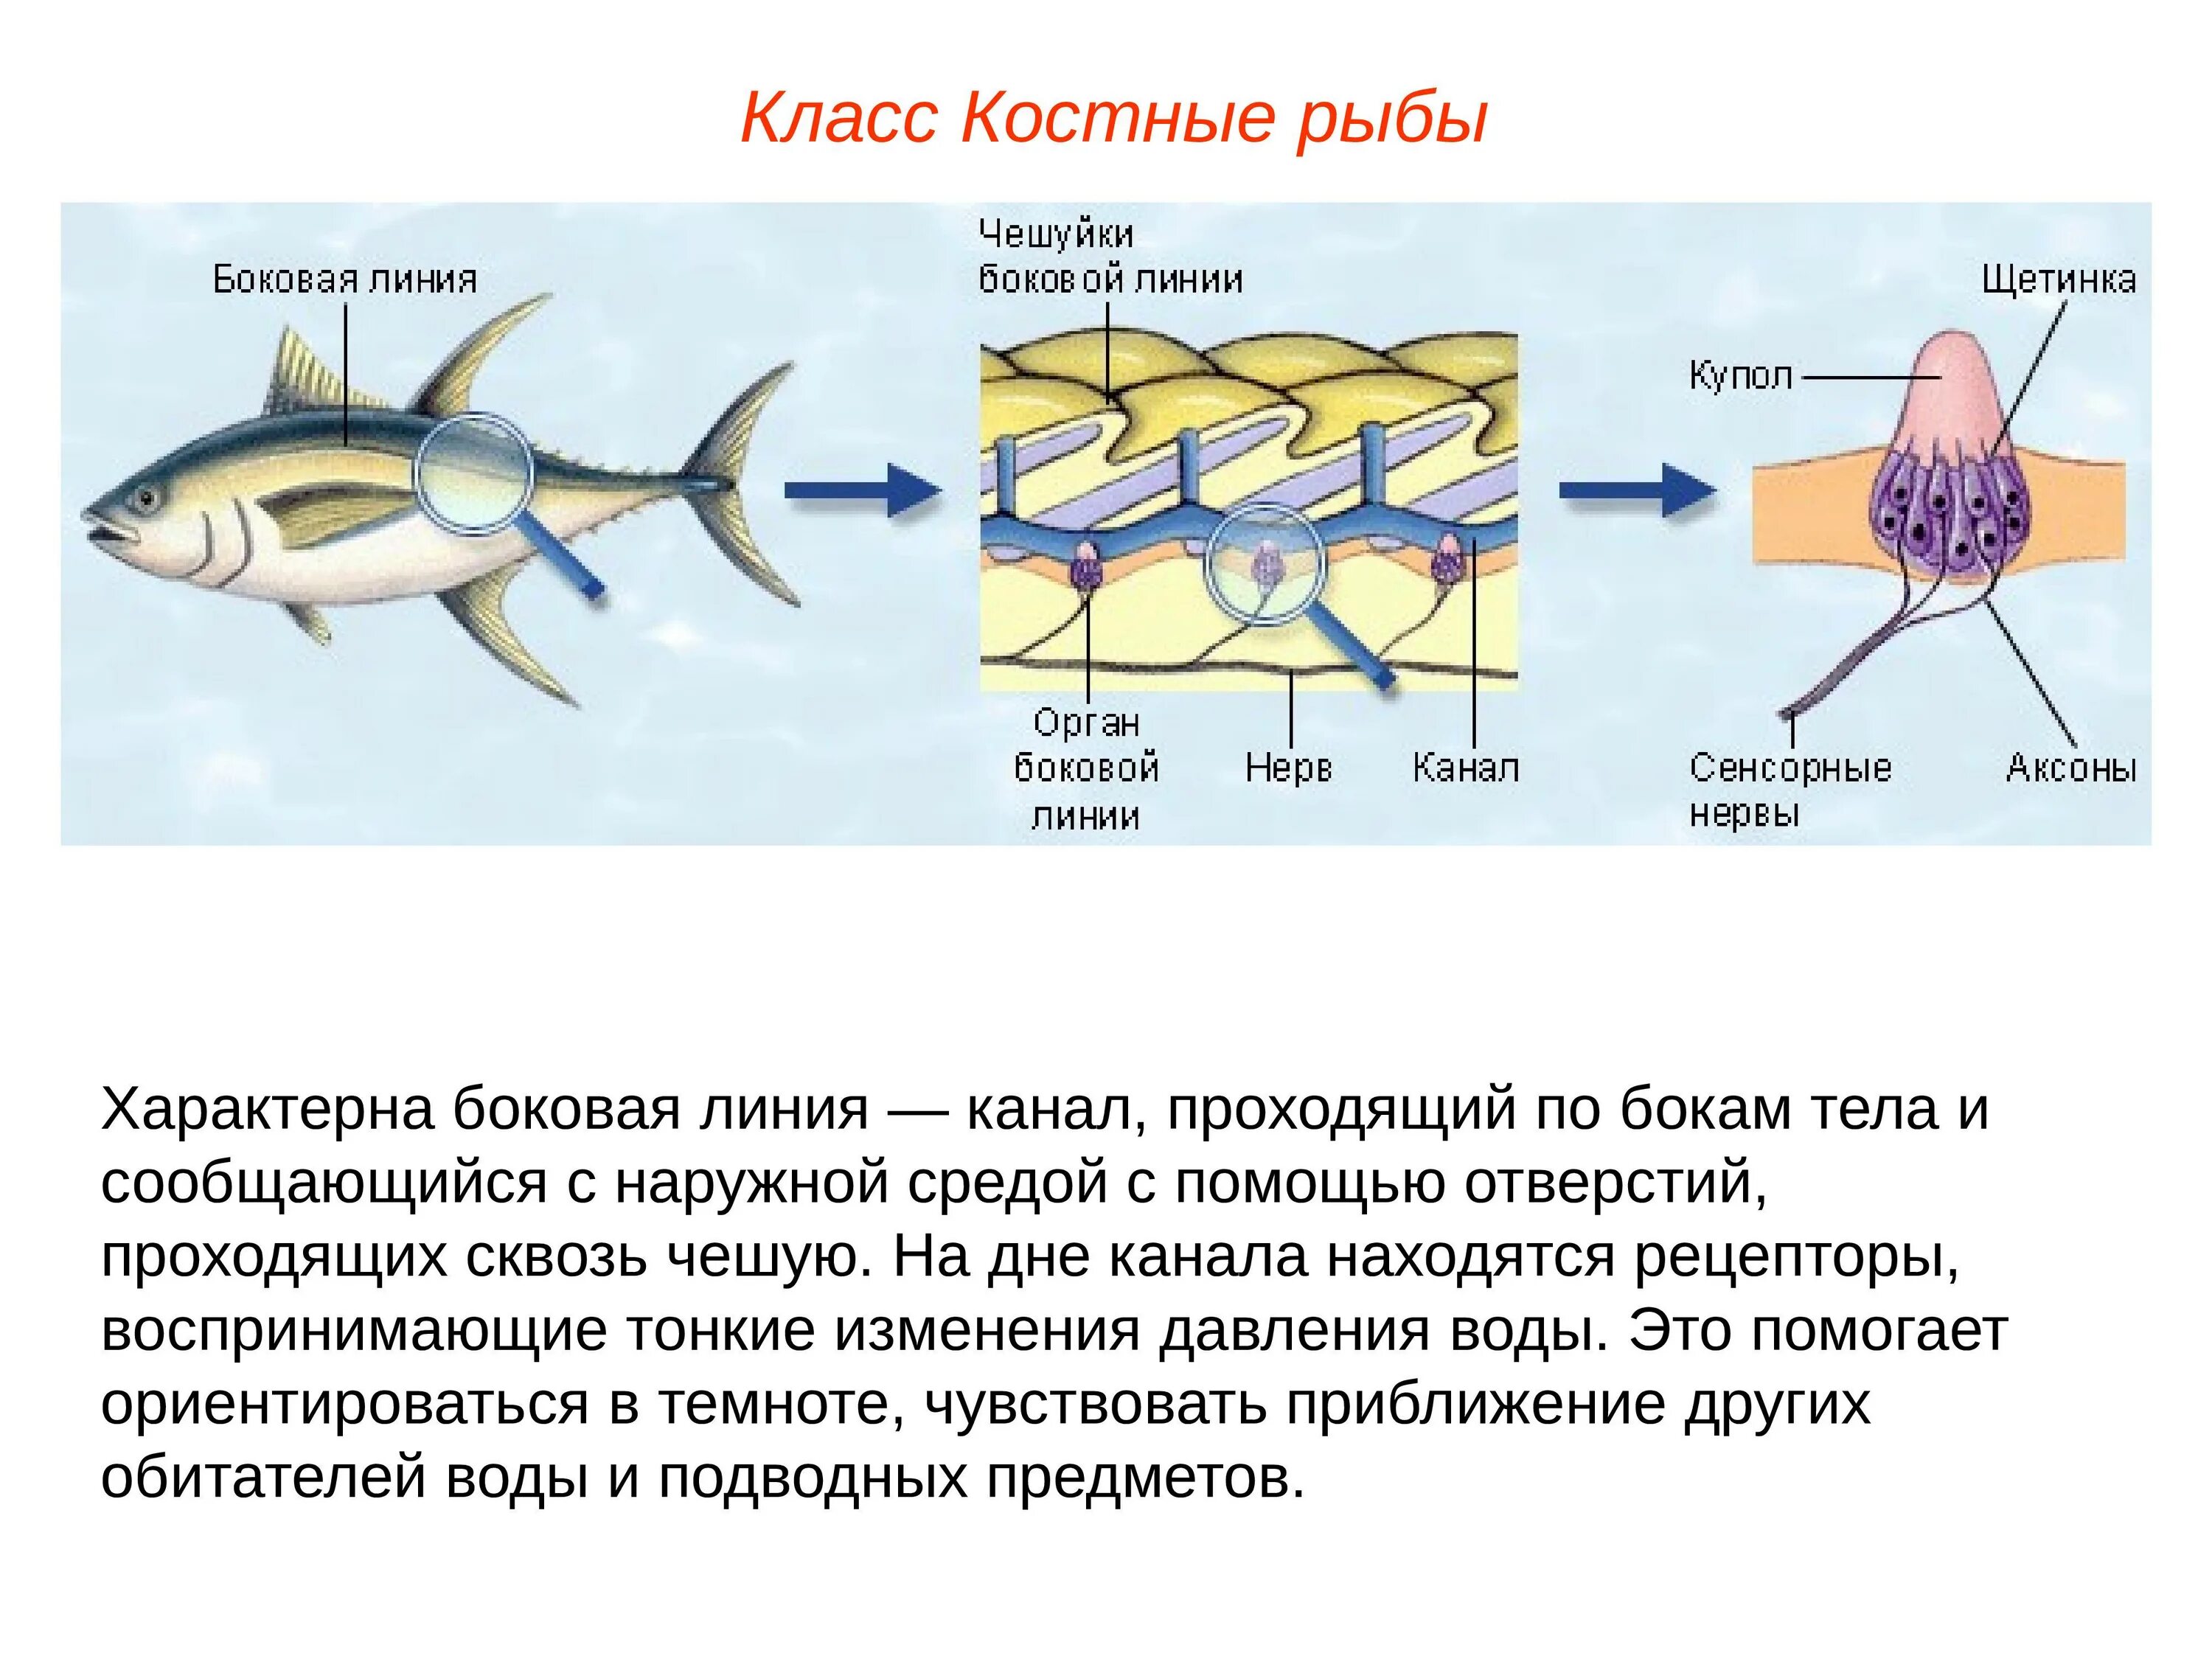 Какие рыбы имеют боковую линию. Нервная система костных рыб таблица. Орган боковой линии костной рыбы. Нервная система костных рыб. Боковая линия у костных рыб.